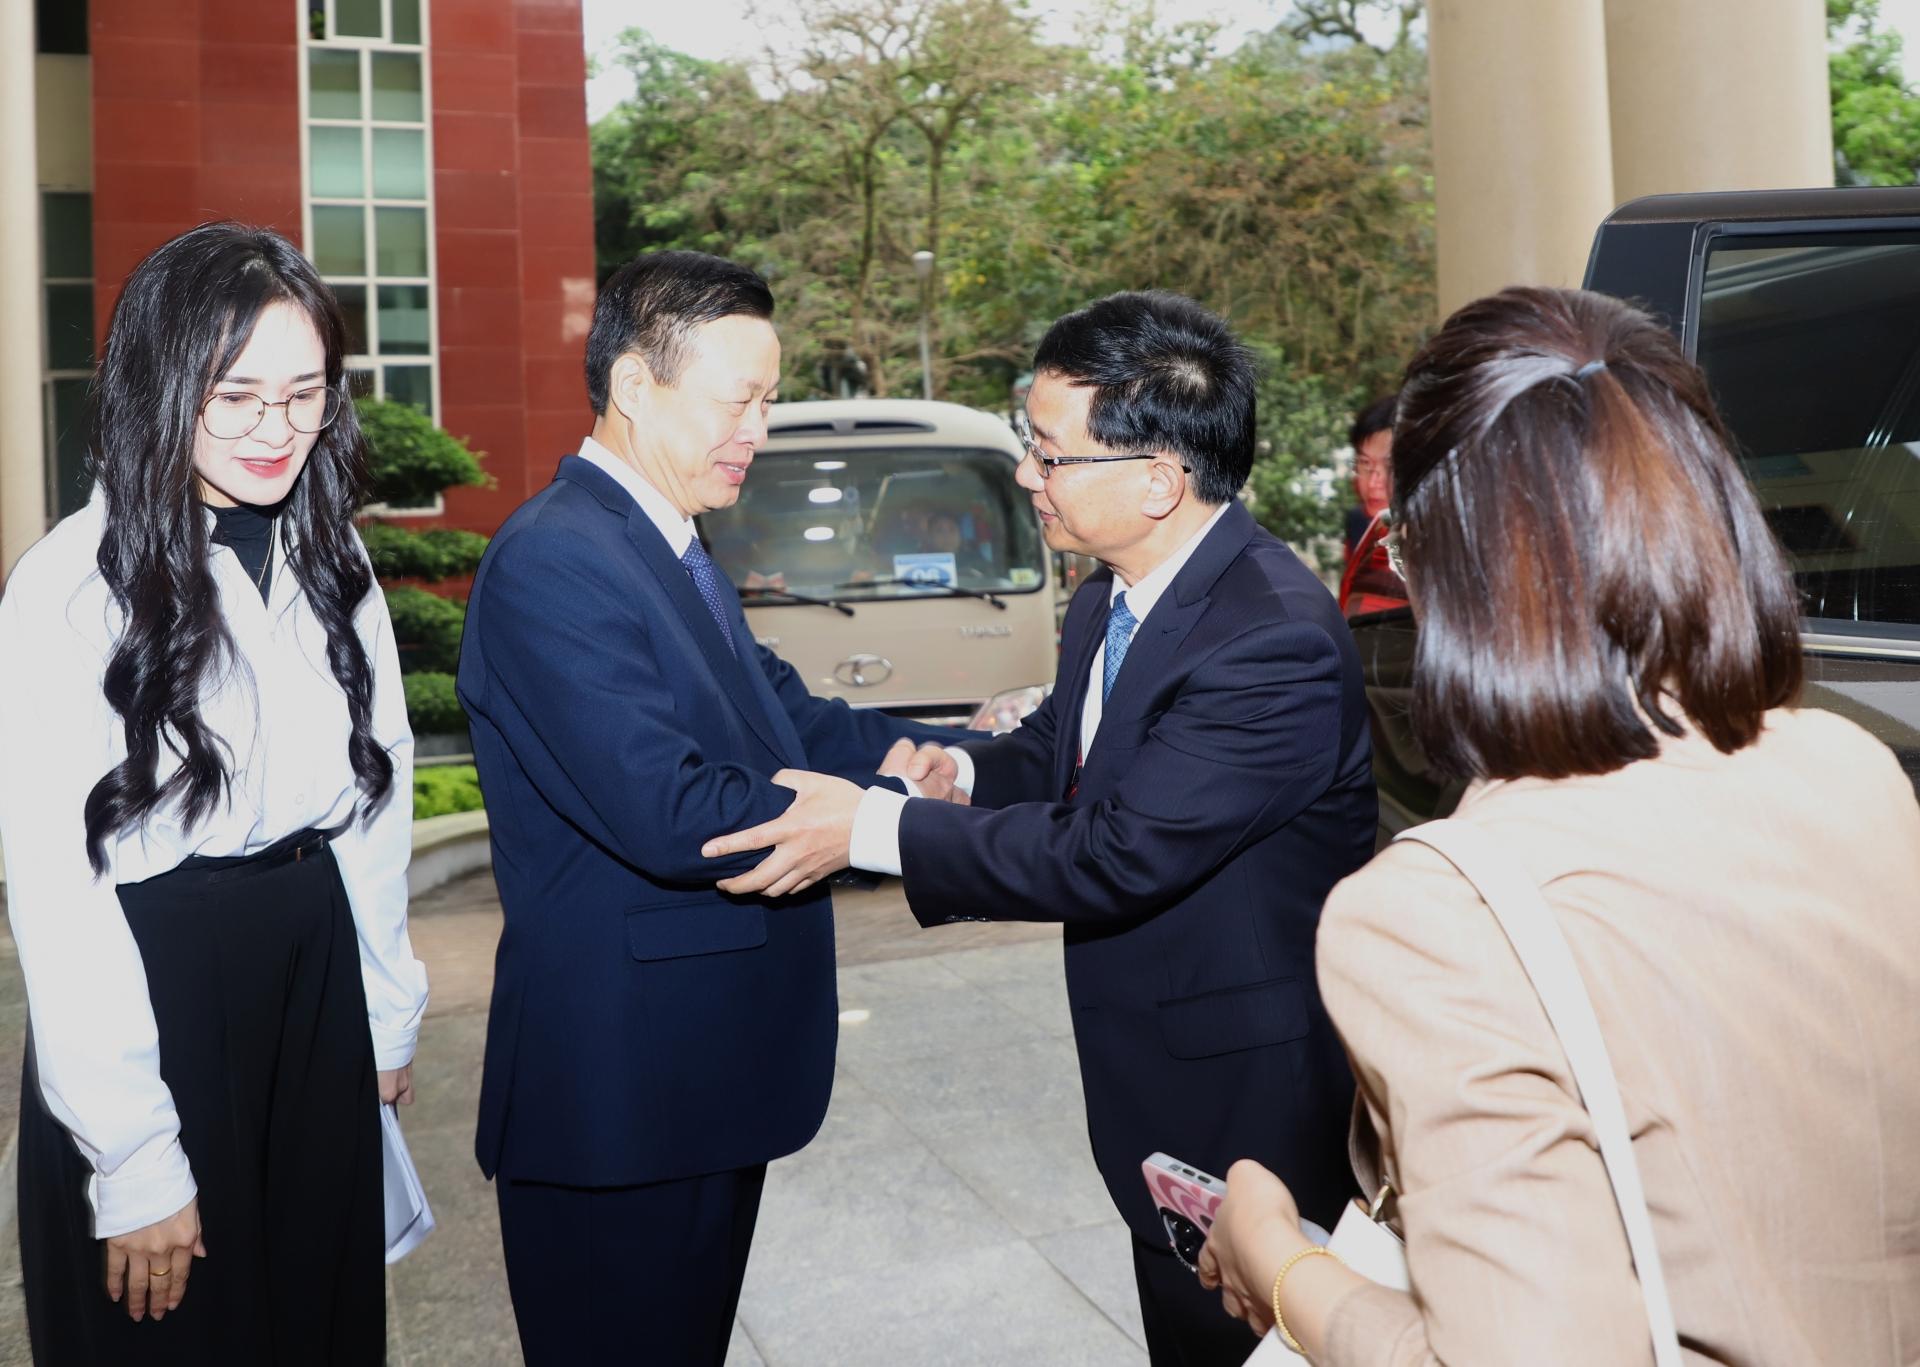 Chủ tịch UBND tỉnh Nguyễn Văn Sơn chào mừng Phó tỉnh trưởng Chính quyền nhân dân tỉnh Vân Nam Dương Bân đến thăm, làm việc tại tỉnh.